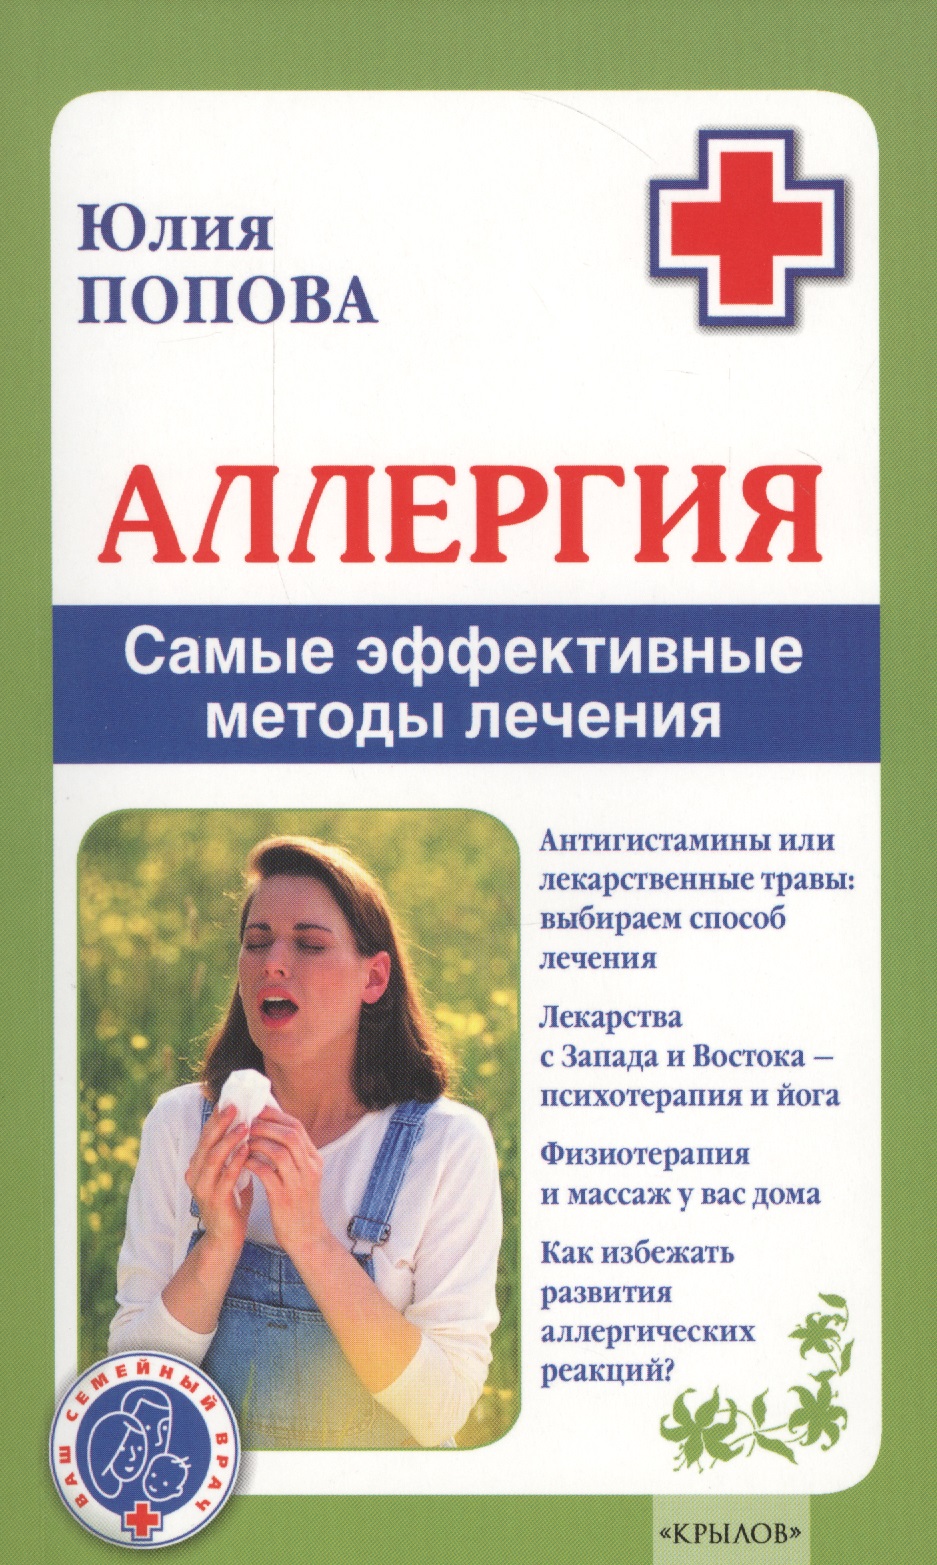 Попова Юлия Сергеевна Аллергия. Самые эффективные методы лечения 2-е изд.